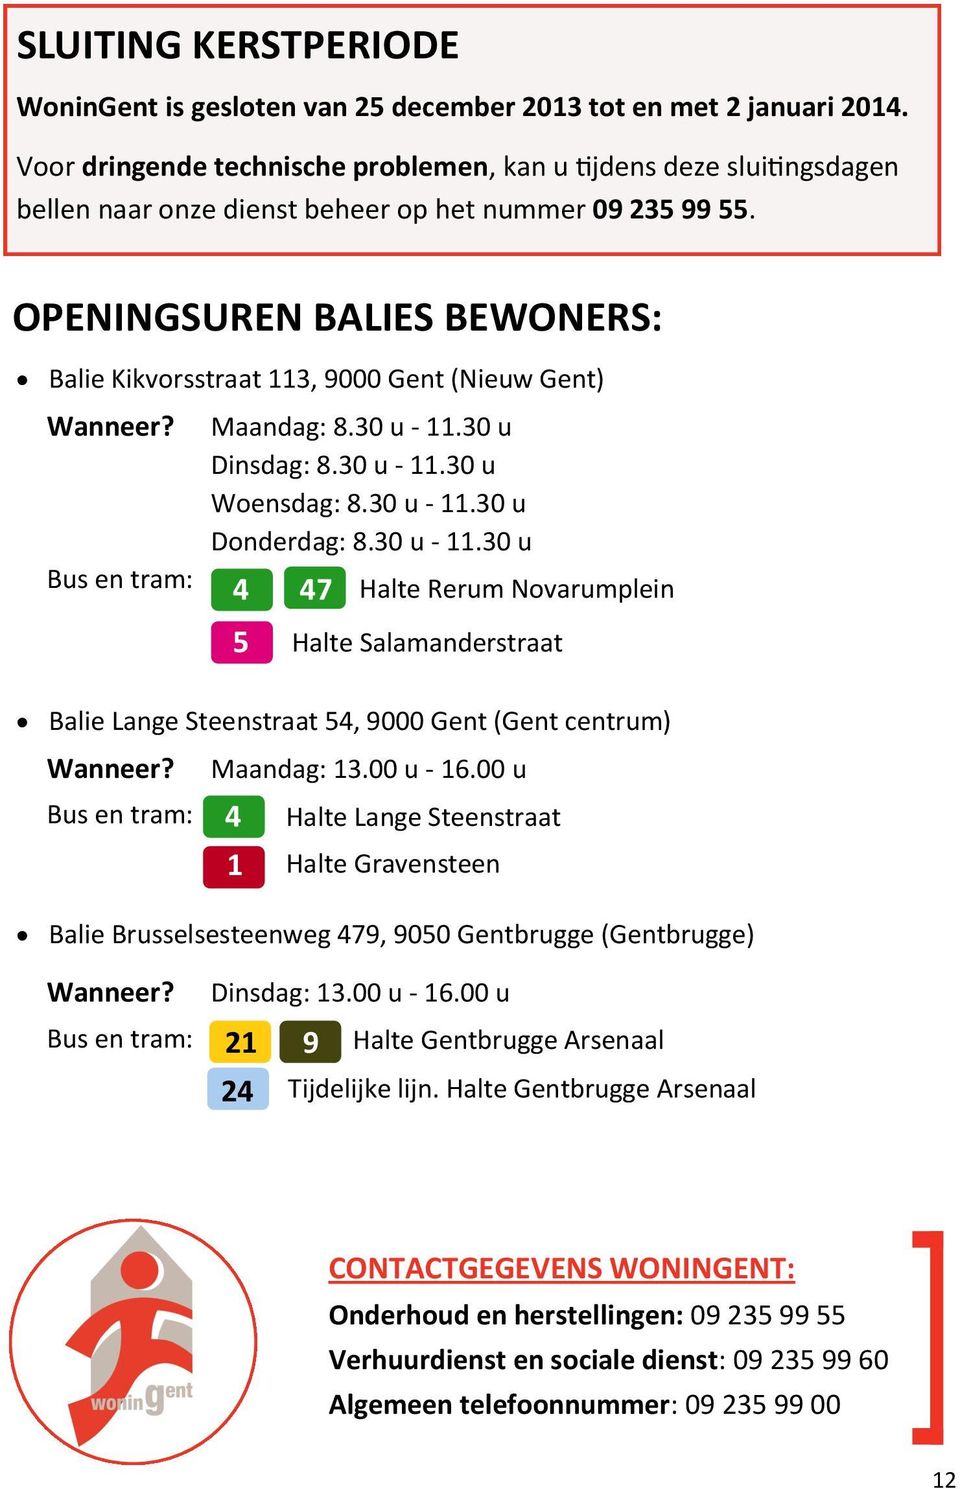 OPENINGSUREN BALIES BEWONERS: Balie Kikvorsstraat 113, 9000 Gent (Nieuw Gent) Wanneer? Bus en tram: Maandag: 8.30 u - 11.30 u Dinsdag: 8.30 u - 11.30 u Woensdag: 8.30 u - 11.30 u Donderdag: 8.